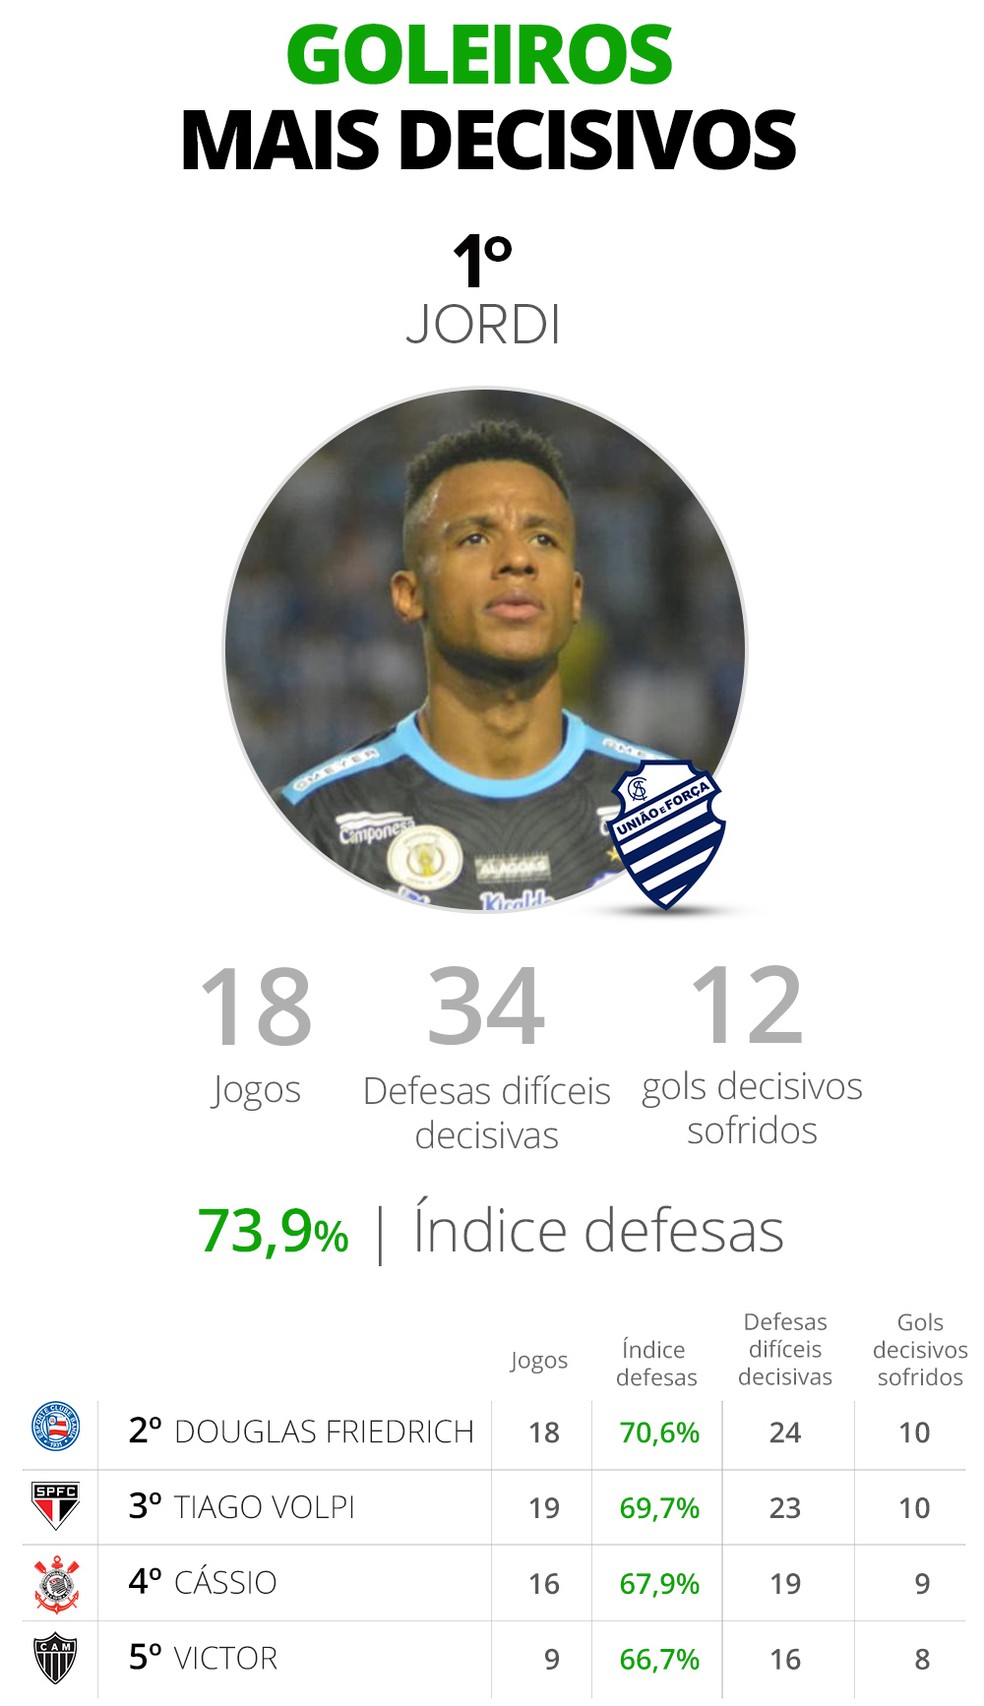 Rankings mostram os goleiros mais decisivos do Brasileirão e quem